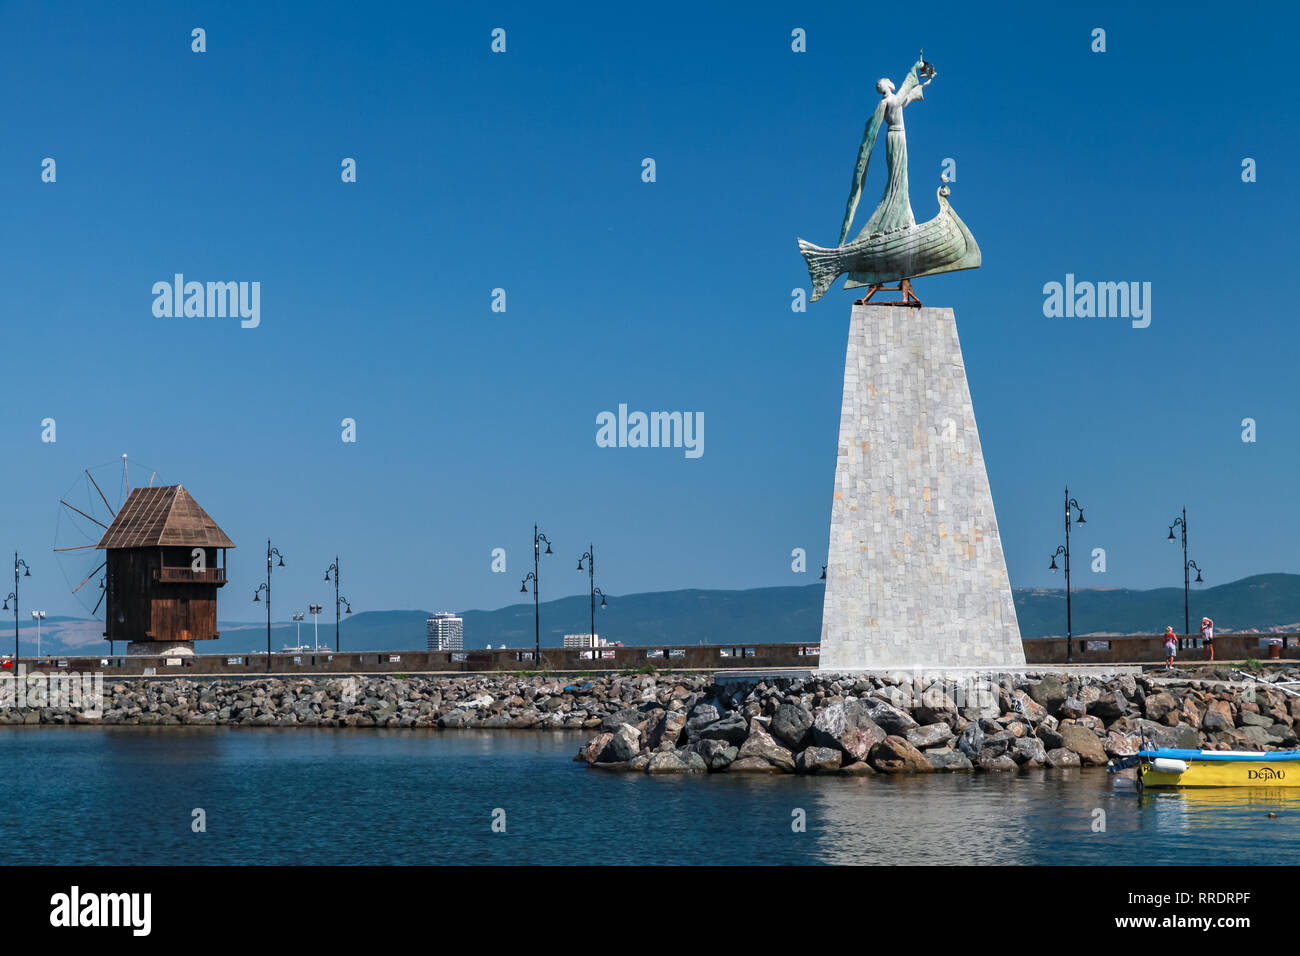 Nessebar, Bulgarie - 21 juillet 2014 : Paysage avec ancien moulin à vent et une statue de Saint Nicolas, de la vieille ville de Nessebar, côte de la mer Noire Banque D'Images